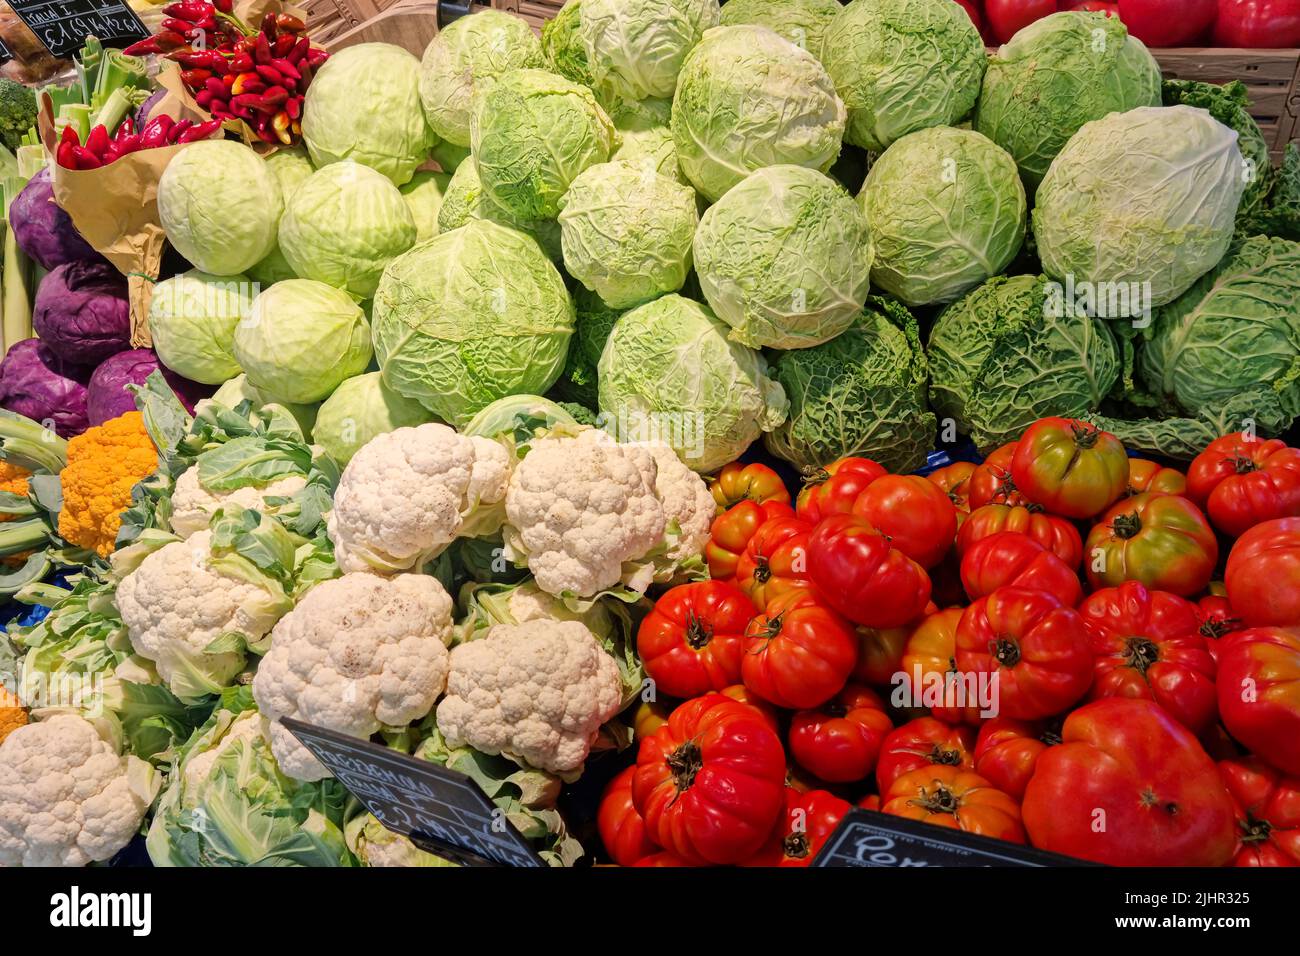 Verdure grezze sane in vendita su una mensola del mercato del negozio,crescita del prezzo del prodotto alimentare Foto Stock